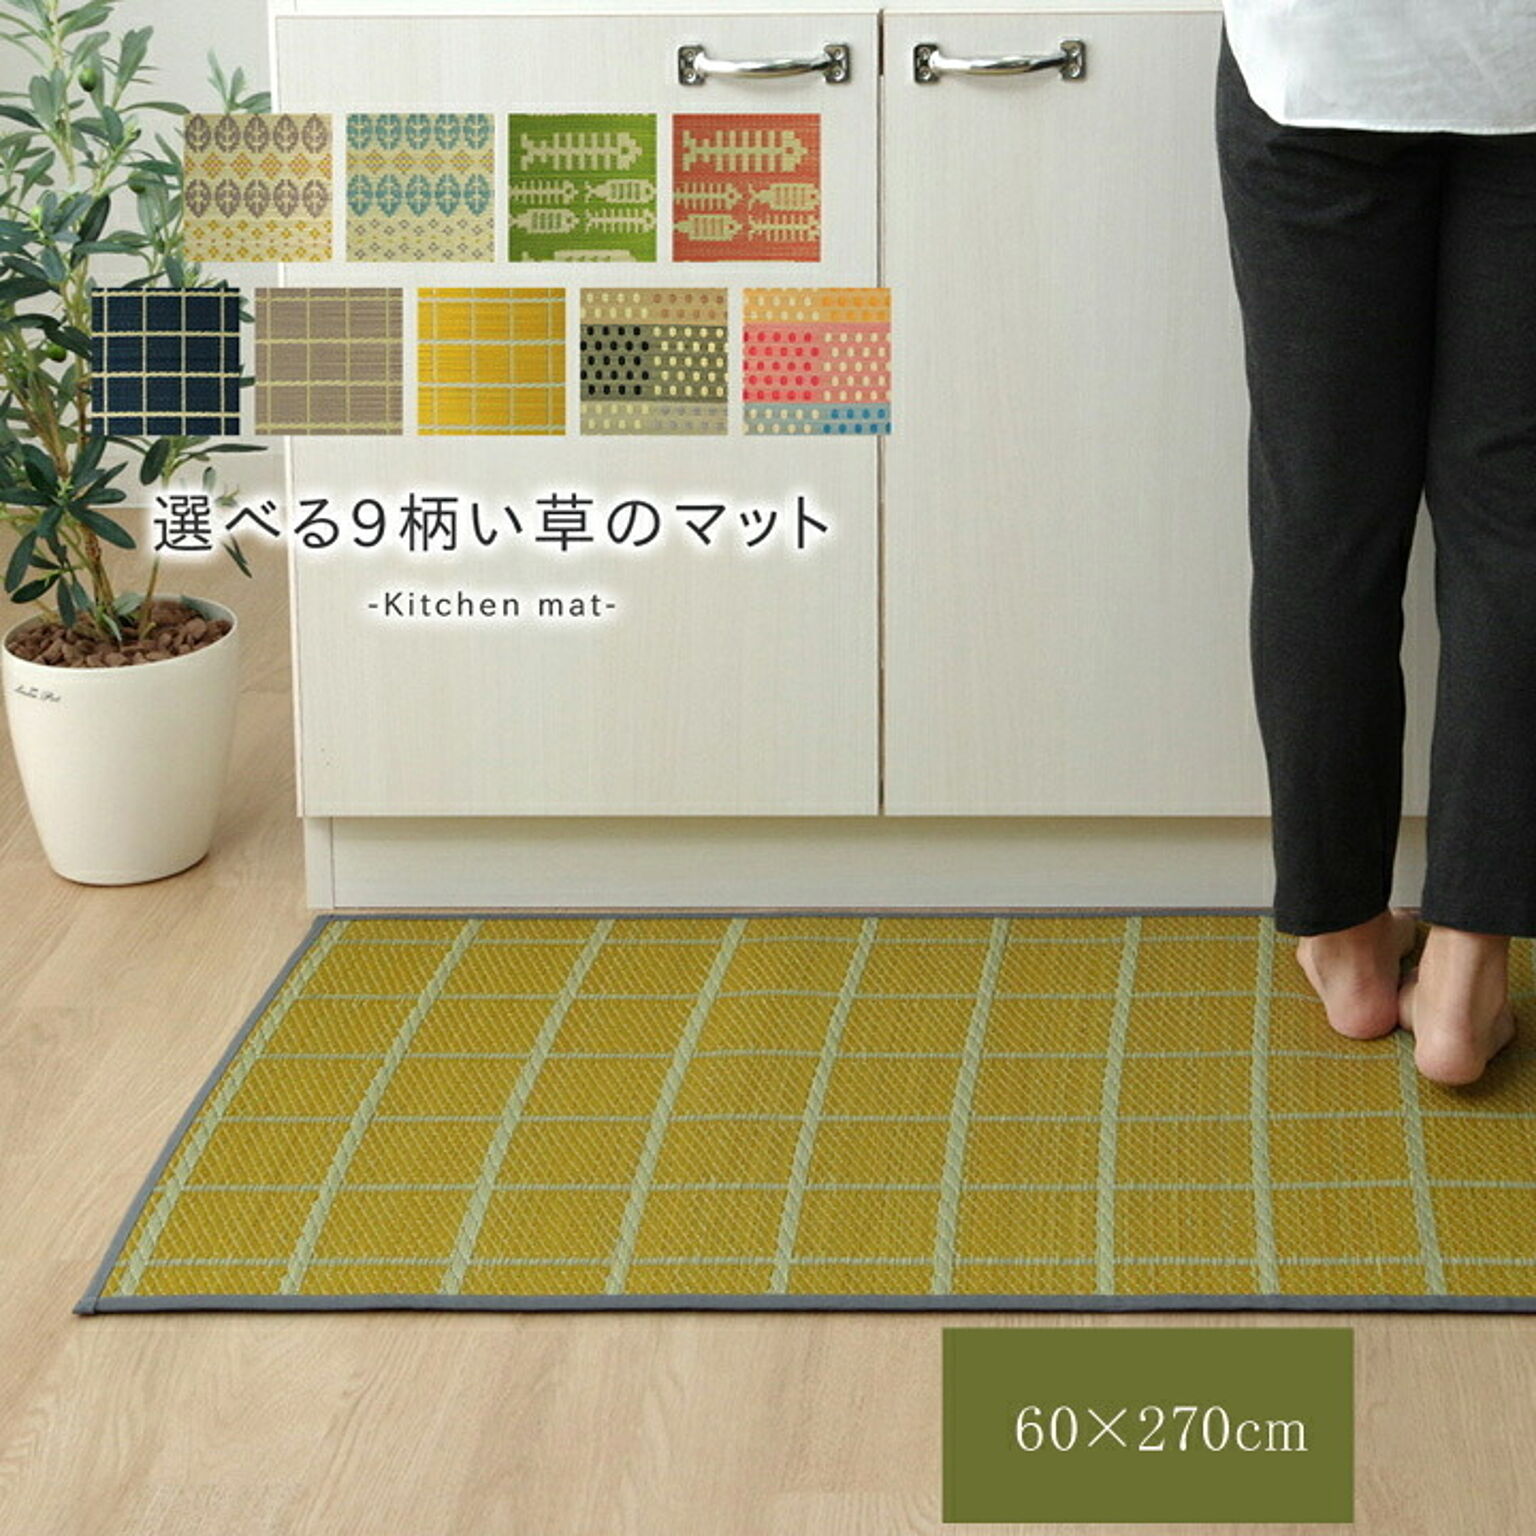 イケヒコ・コーポレーション い草キッチンマット おさかな 60×270cm グリーン 8235200